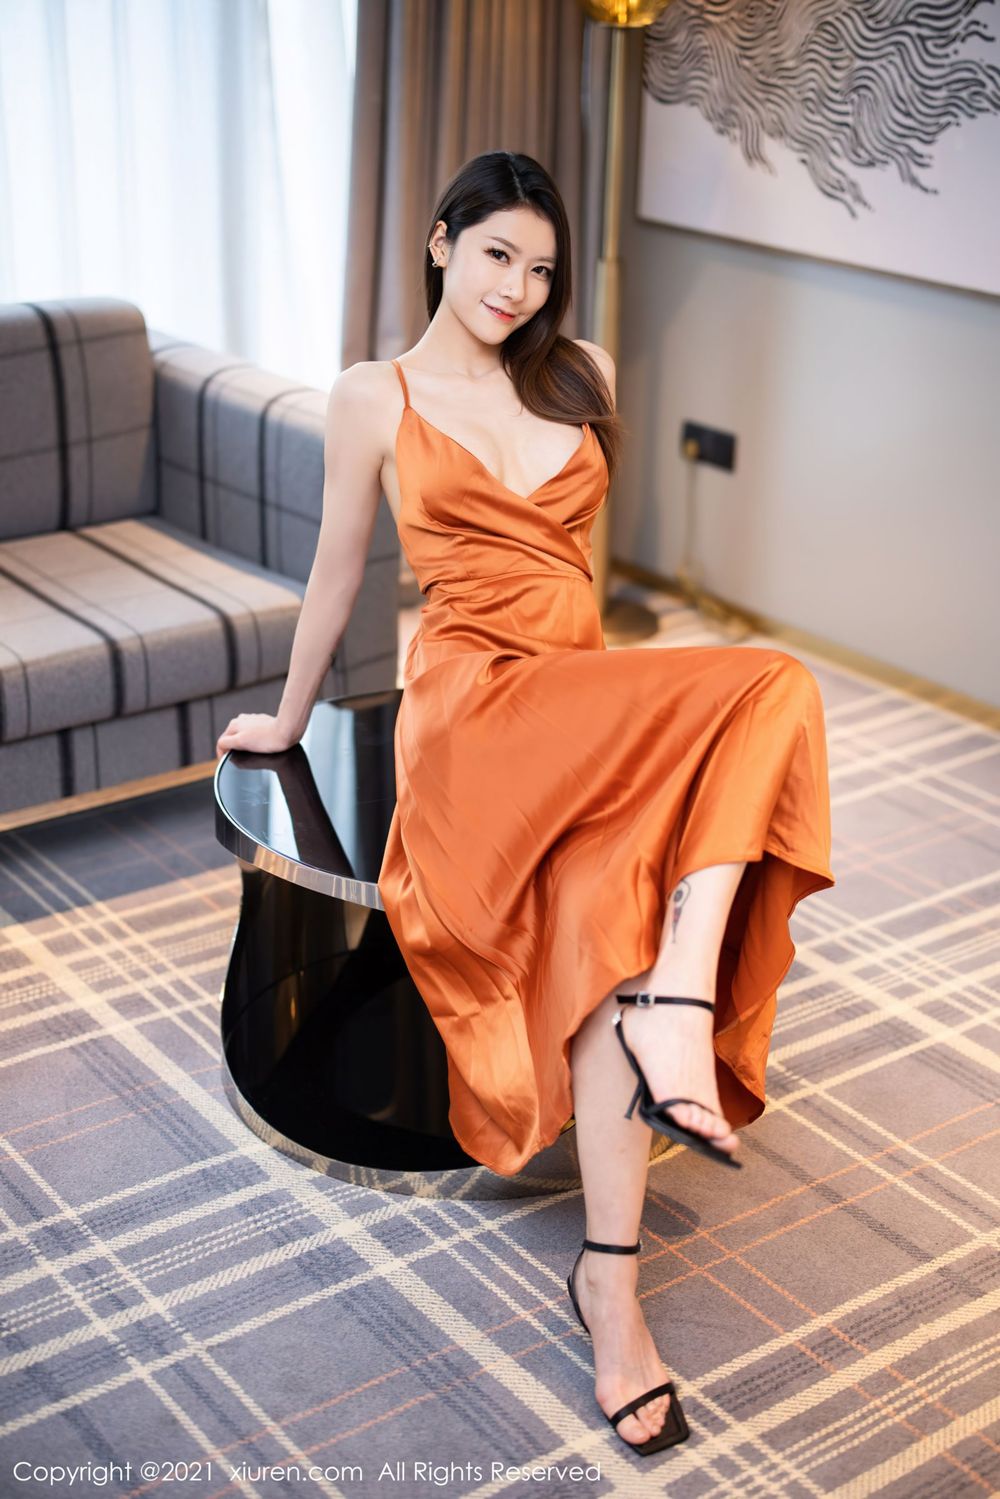 美女模特方子萱橙色深V吊裙高挑身材私房系列写真